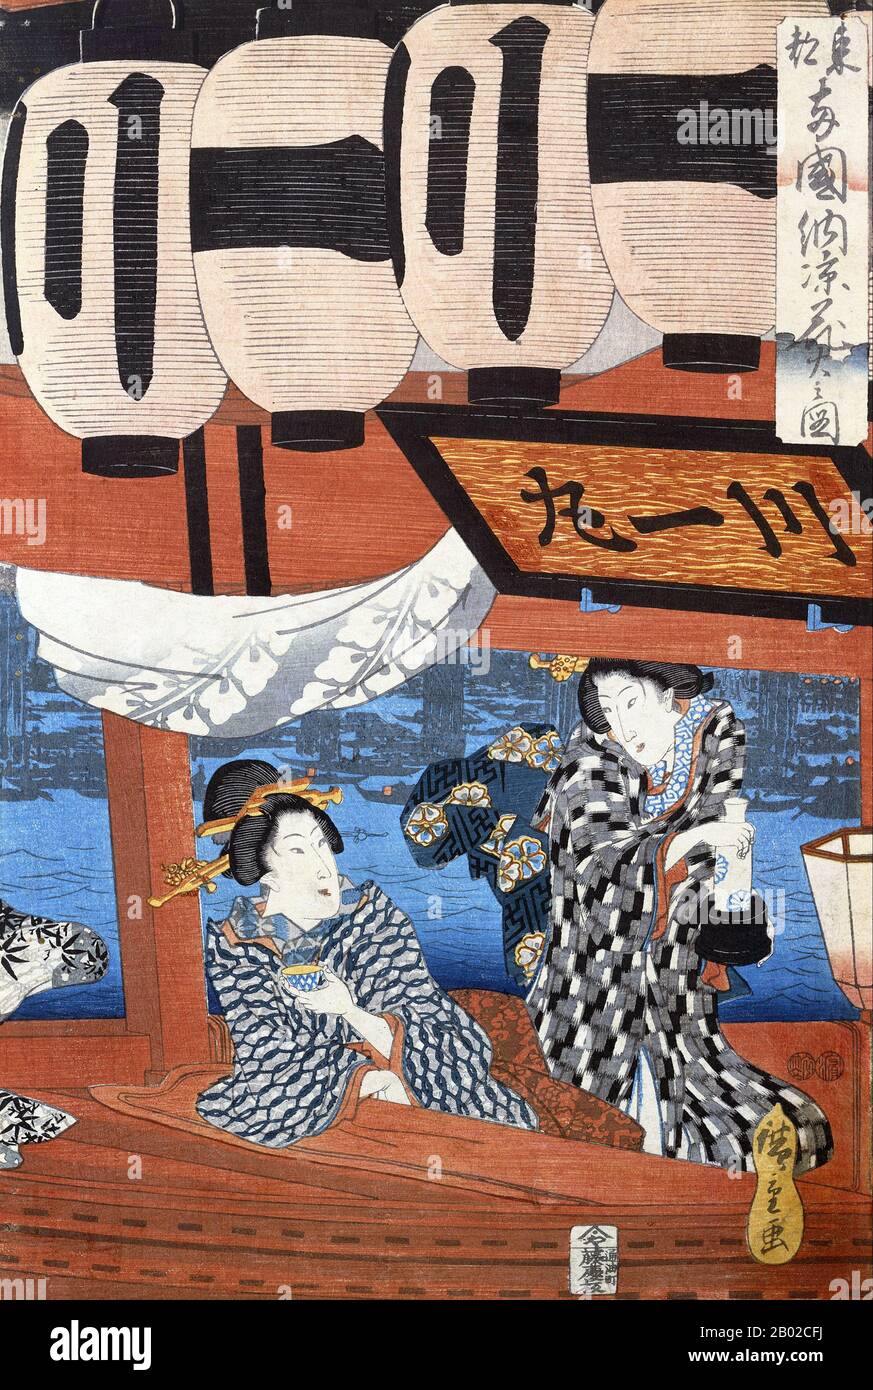 Utagawa Hiroshige (1797 – 12 de octubre de 1858) fue un artista ukiyo-e japonés, y uno de los últimos grandes artistas de esa tradición. También fue llamado Andō Hiroshige, y por el nombre artístico de Ichiyūsai Hiroshige. Entre muchas obras maestras, Hiroshige es particularmente recordado por "Las sesenta y nueve Estaciones del Kisokaidō" (1834–1842) y "treinta y seis vistas del Monte Fuji" (1852–1858). Foto de stock